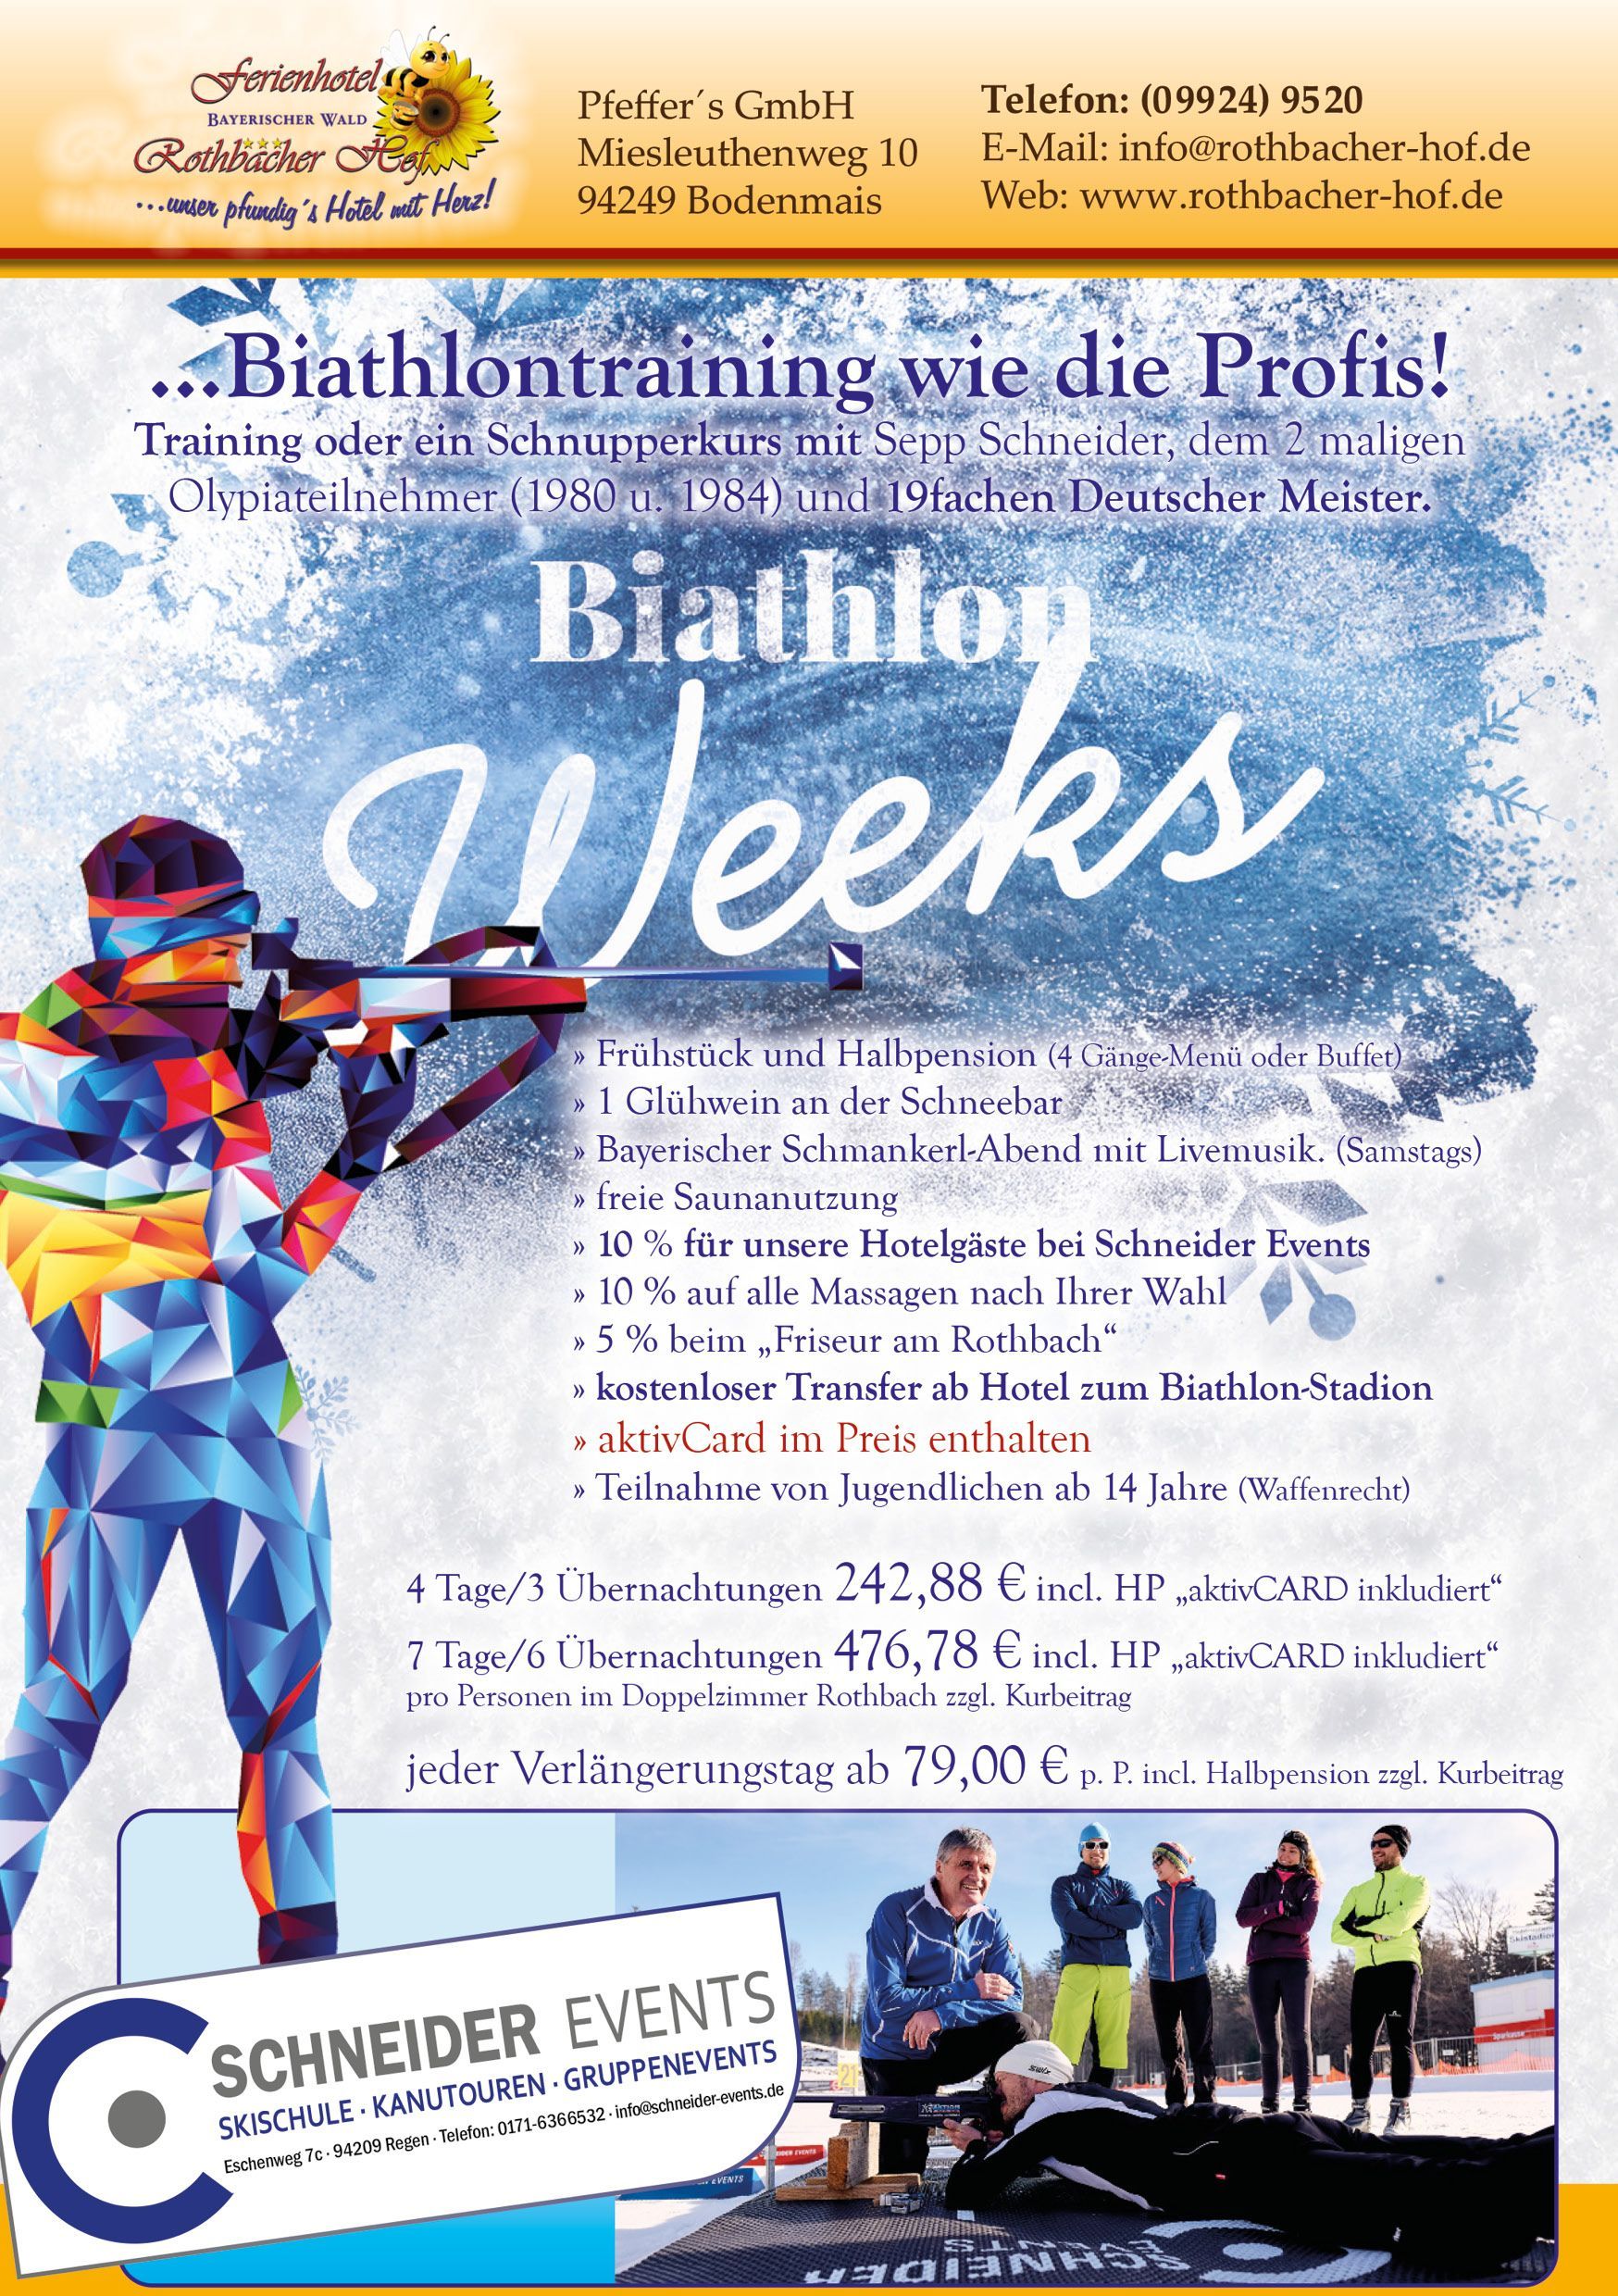 Biathlon weeks im Rothbacher Hof